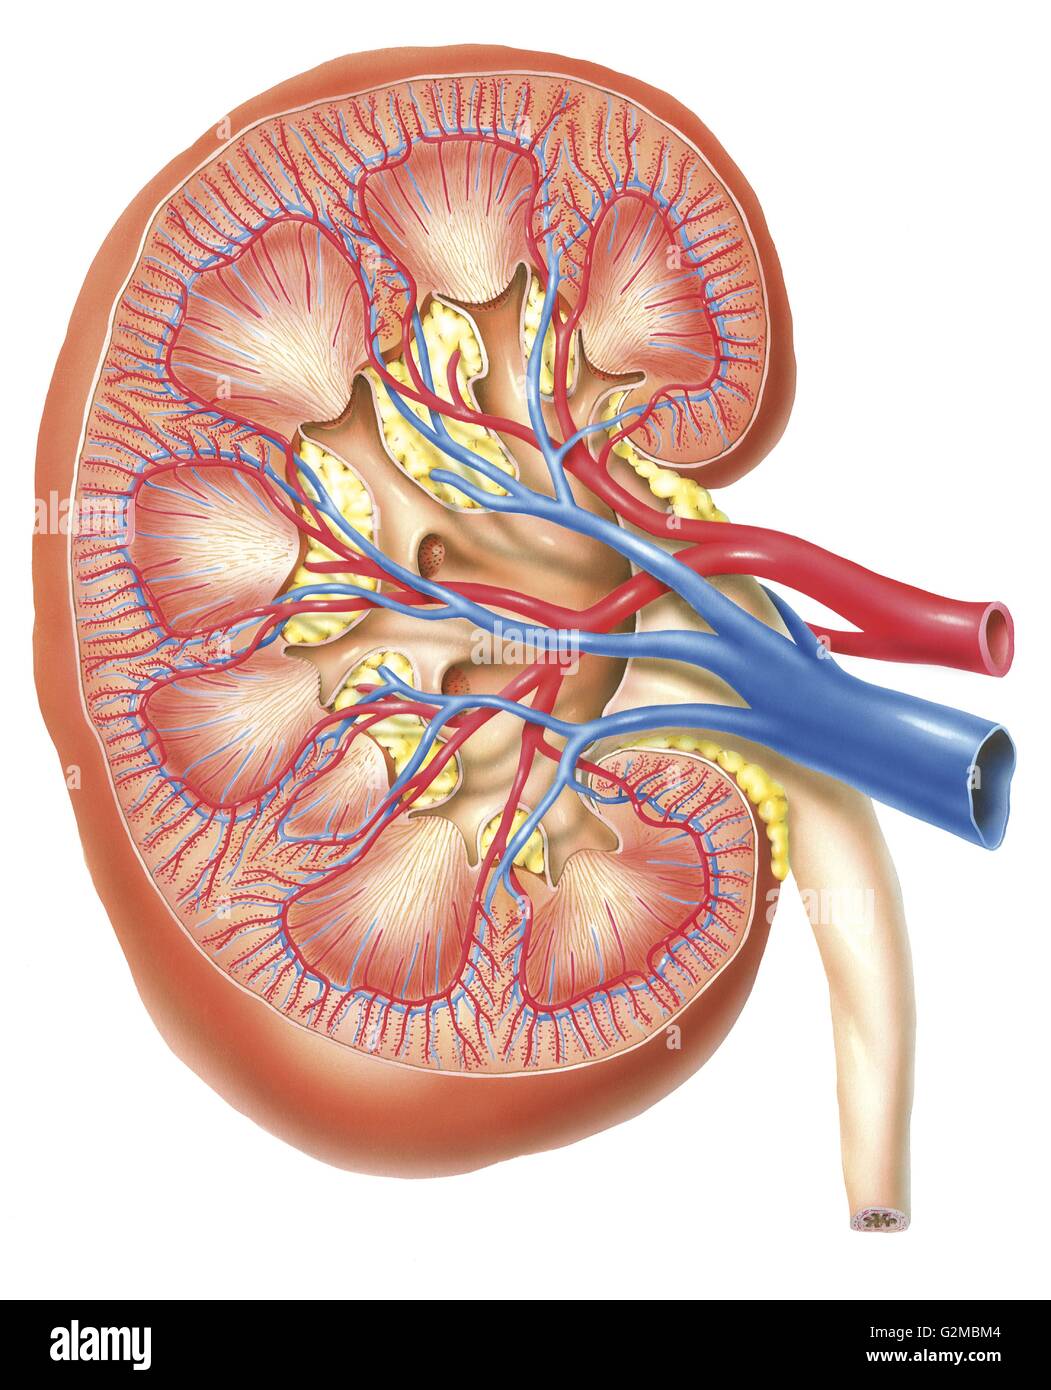 Anatomie der Niere Stockfoto